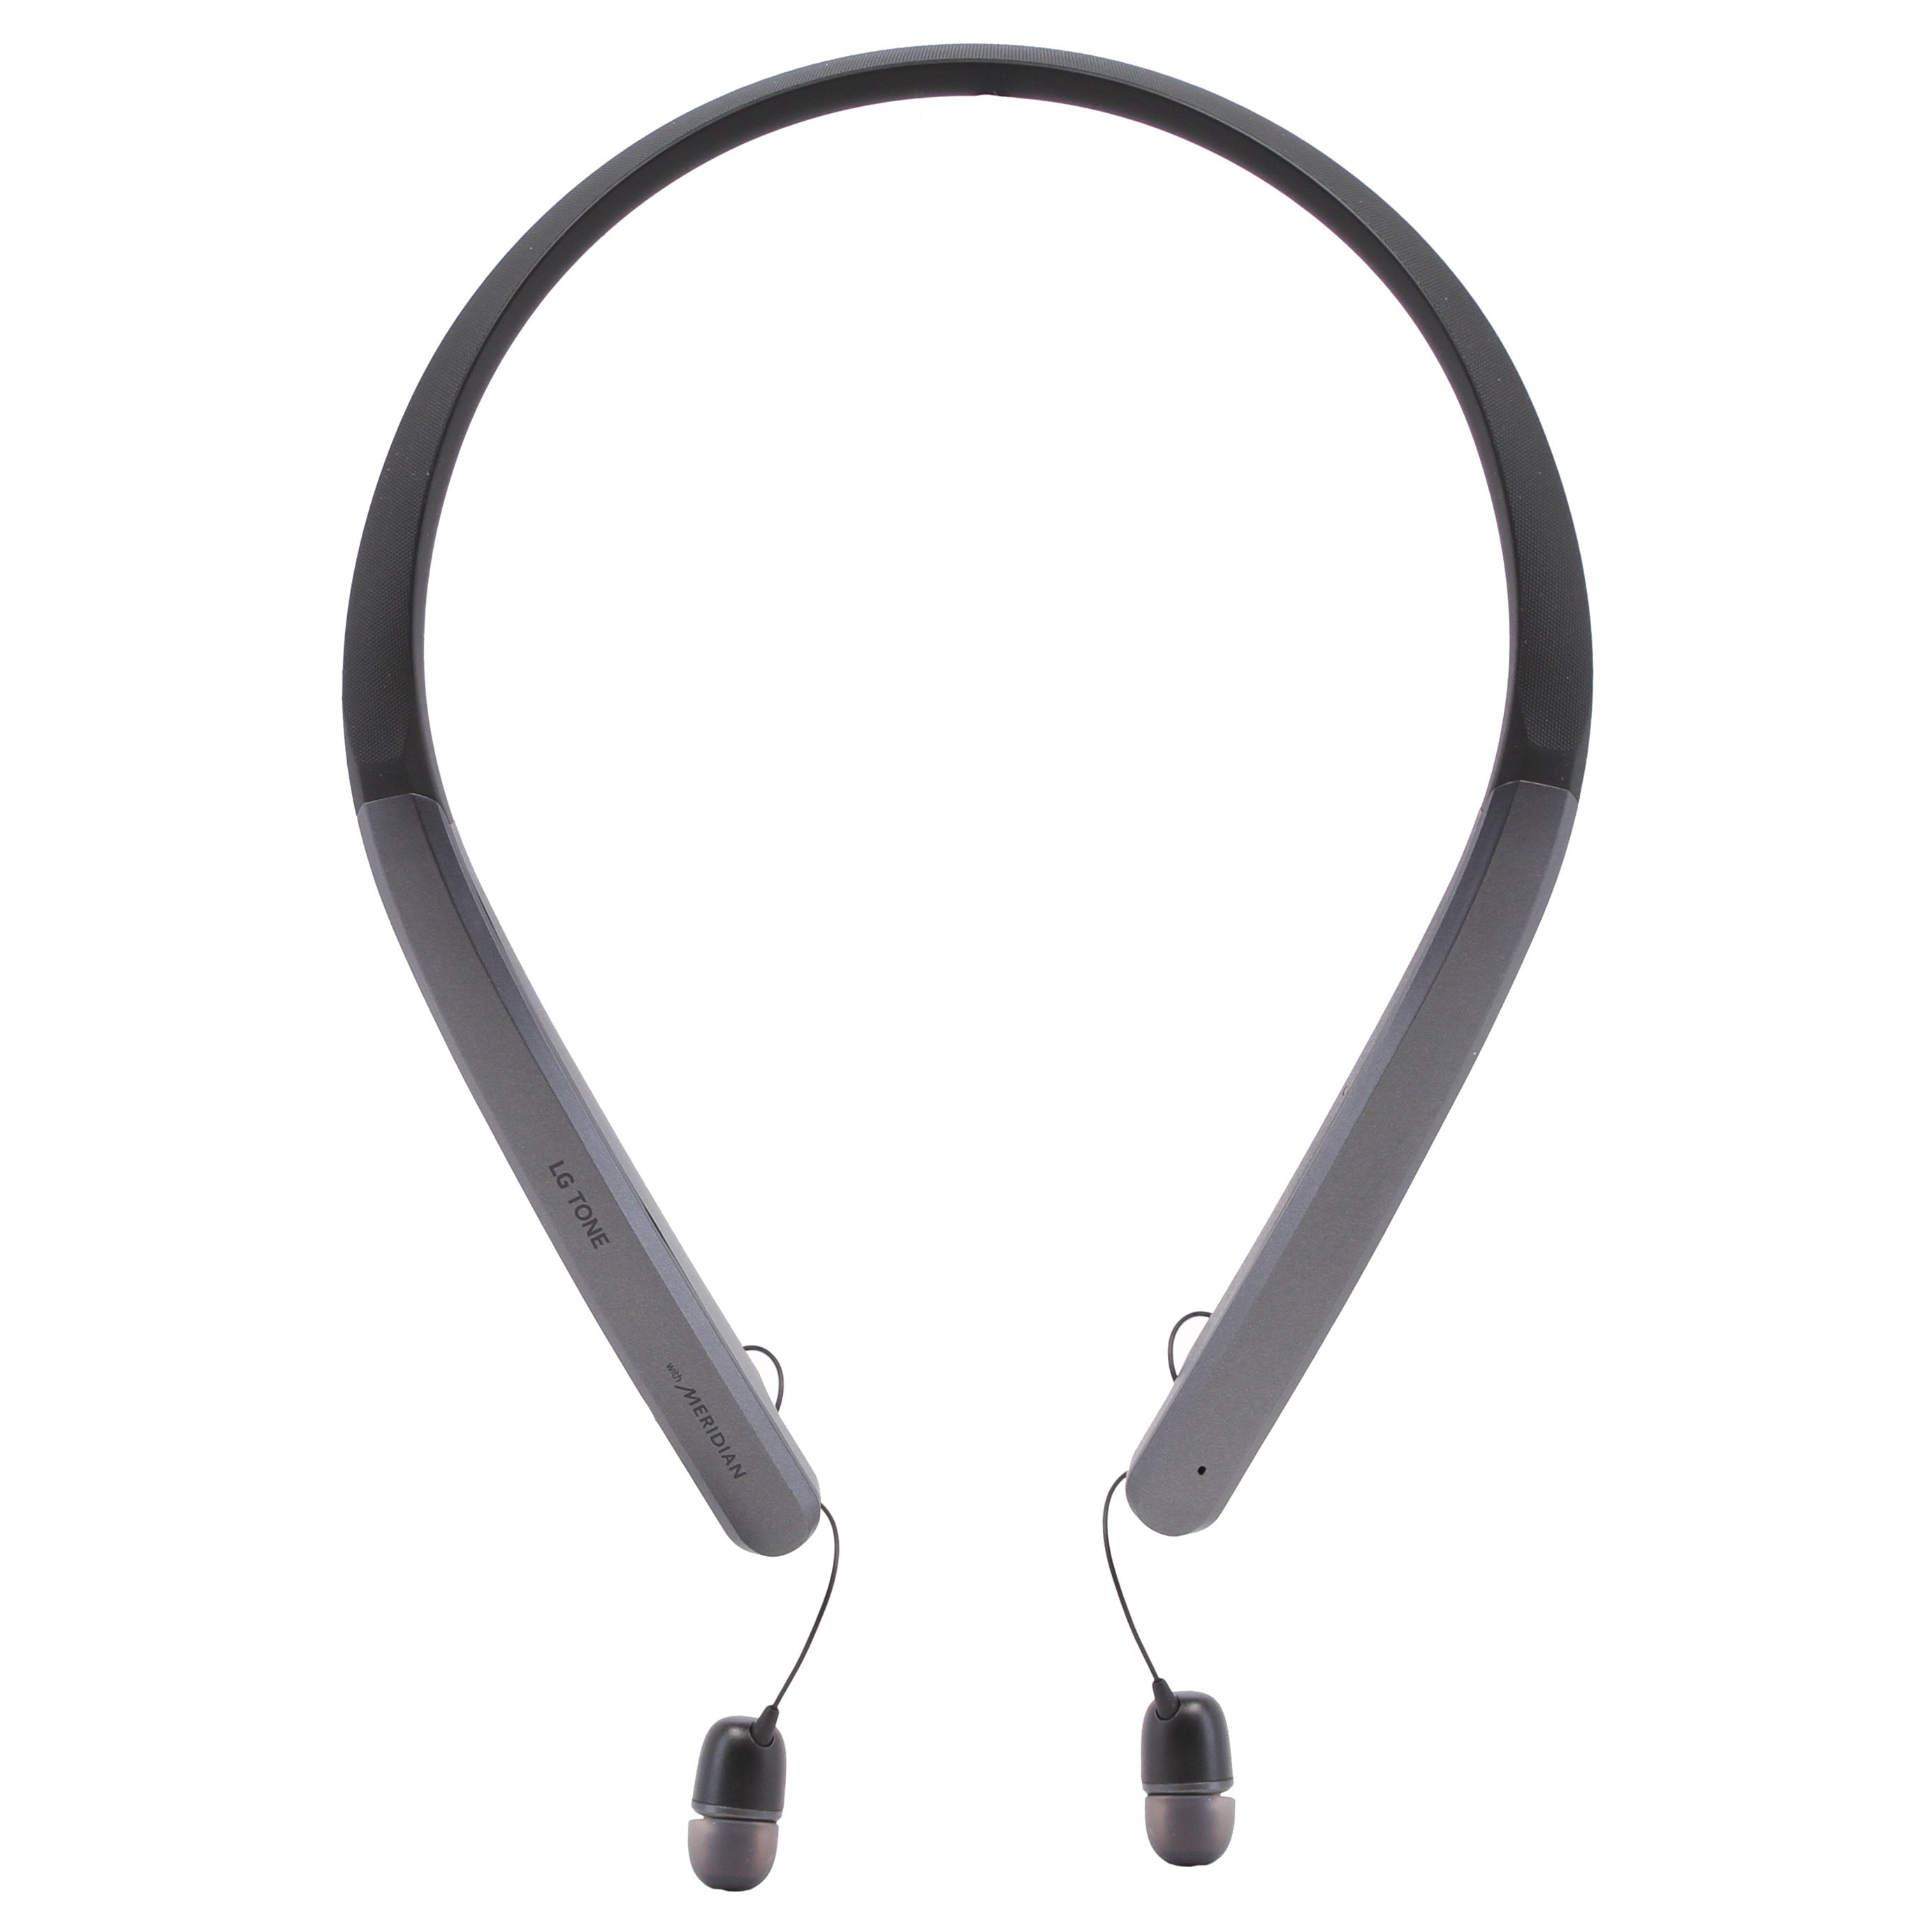 LG TONE Flex HBS-XL7 Bluetooth Wireless Stereo Headset - Black (New)